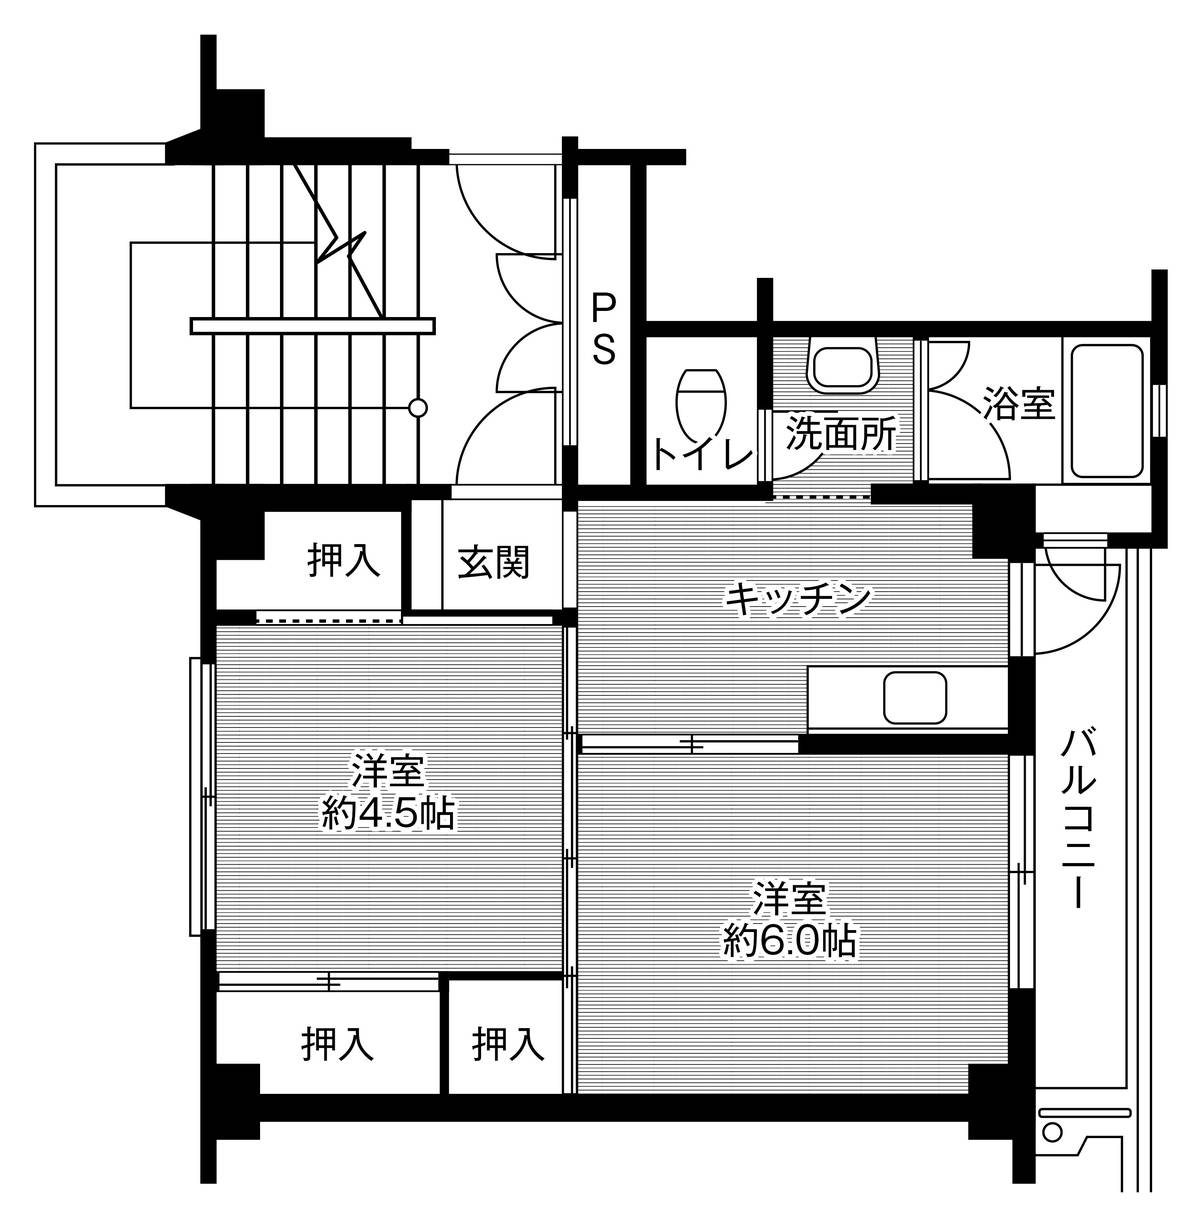 Sơ đồ phòng 2K của Village House Futamata ở Tenryu-ku